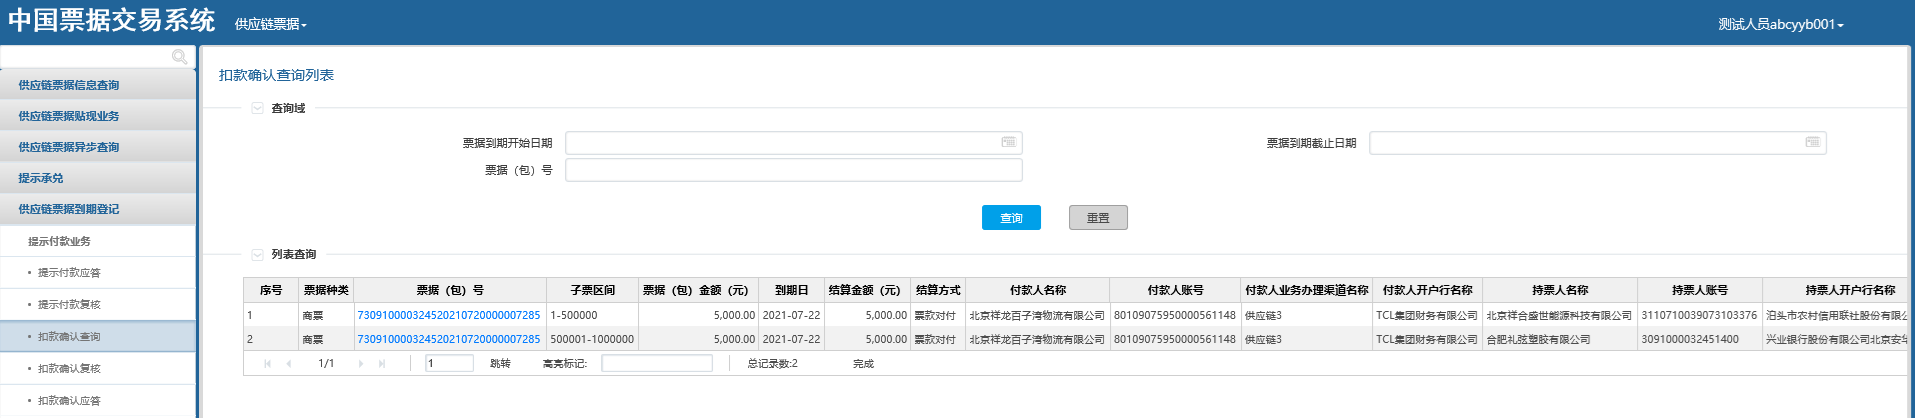 《新一代票据业务系统用户操作手册(供应链票据分册)》